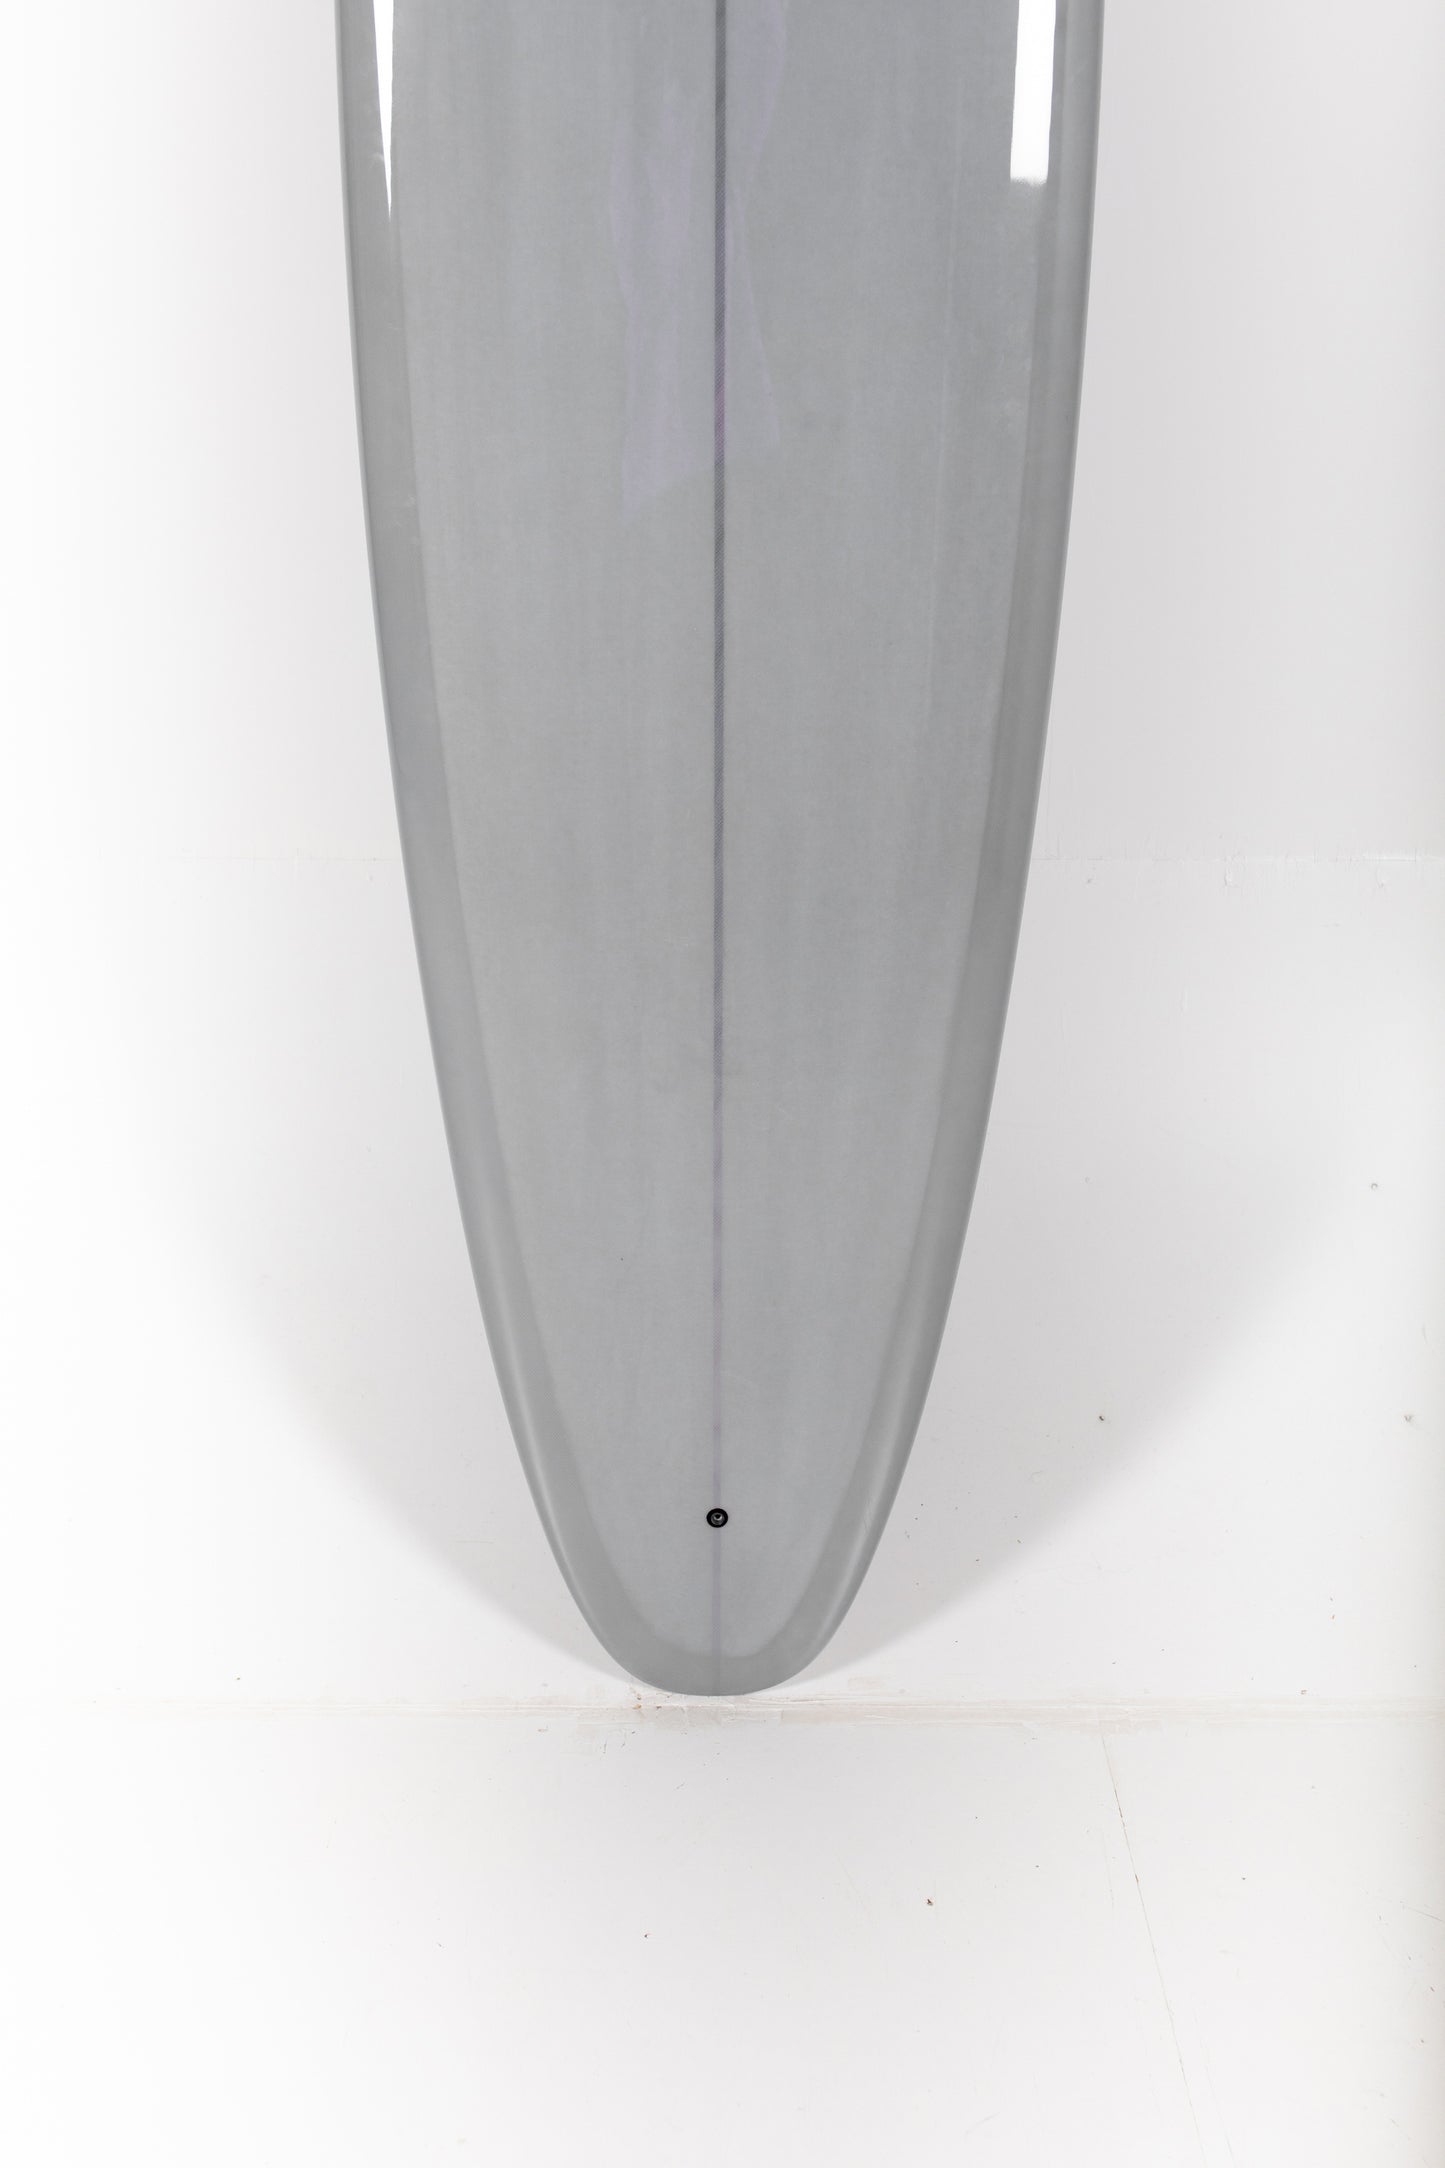 Surfboard Lg Resin Trimmed Board – Tabula Rasa Essentials